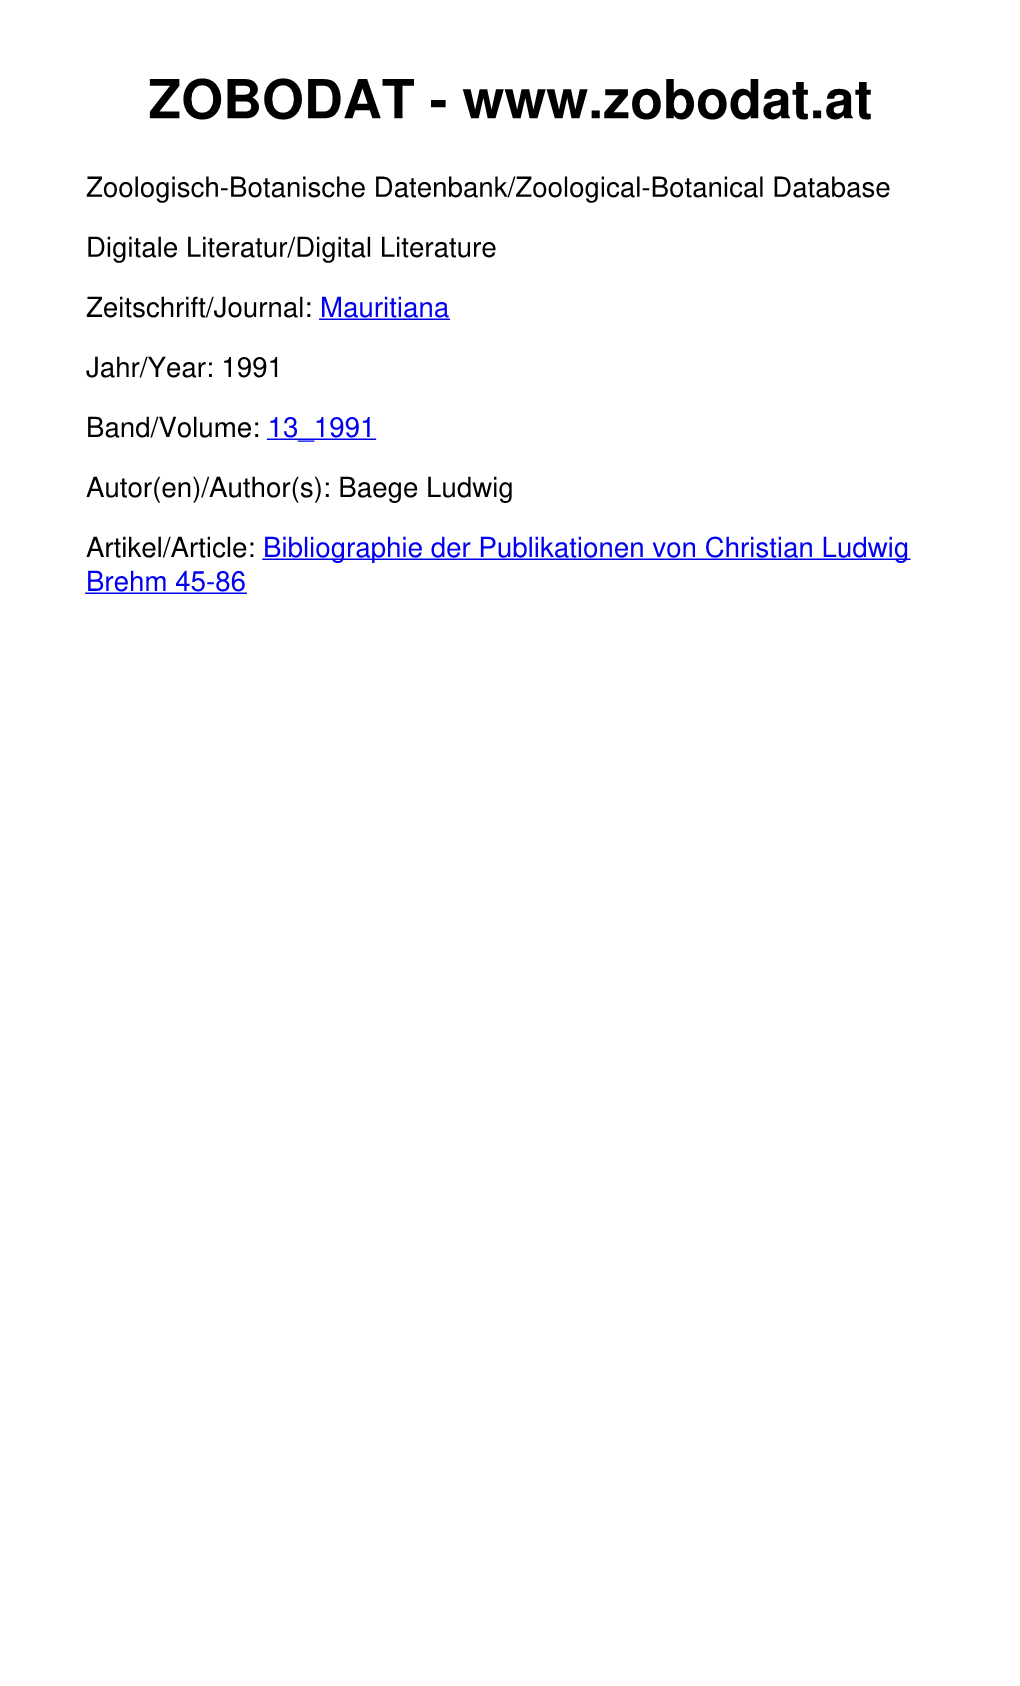 Bibliographie Der Publikationen Von Christian Ludwig Brehm 45-86 ©Mauritianum, Naturkundliches Museum Altenburg Mauritiana (Altenburg) 13 (1991) 1/2, S